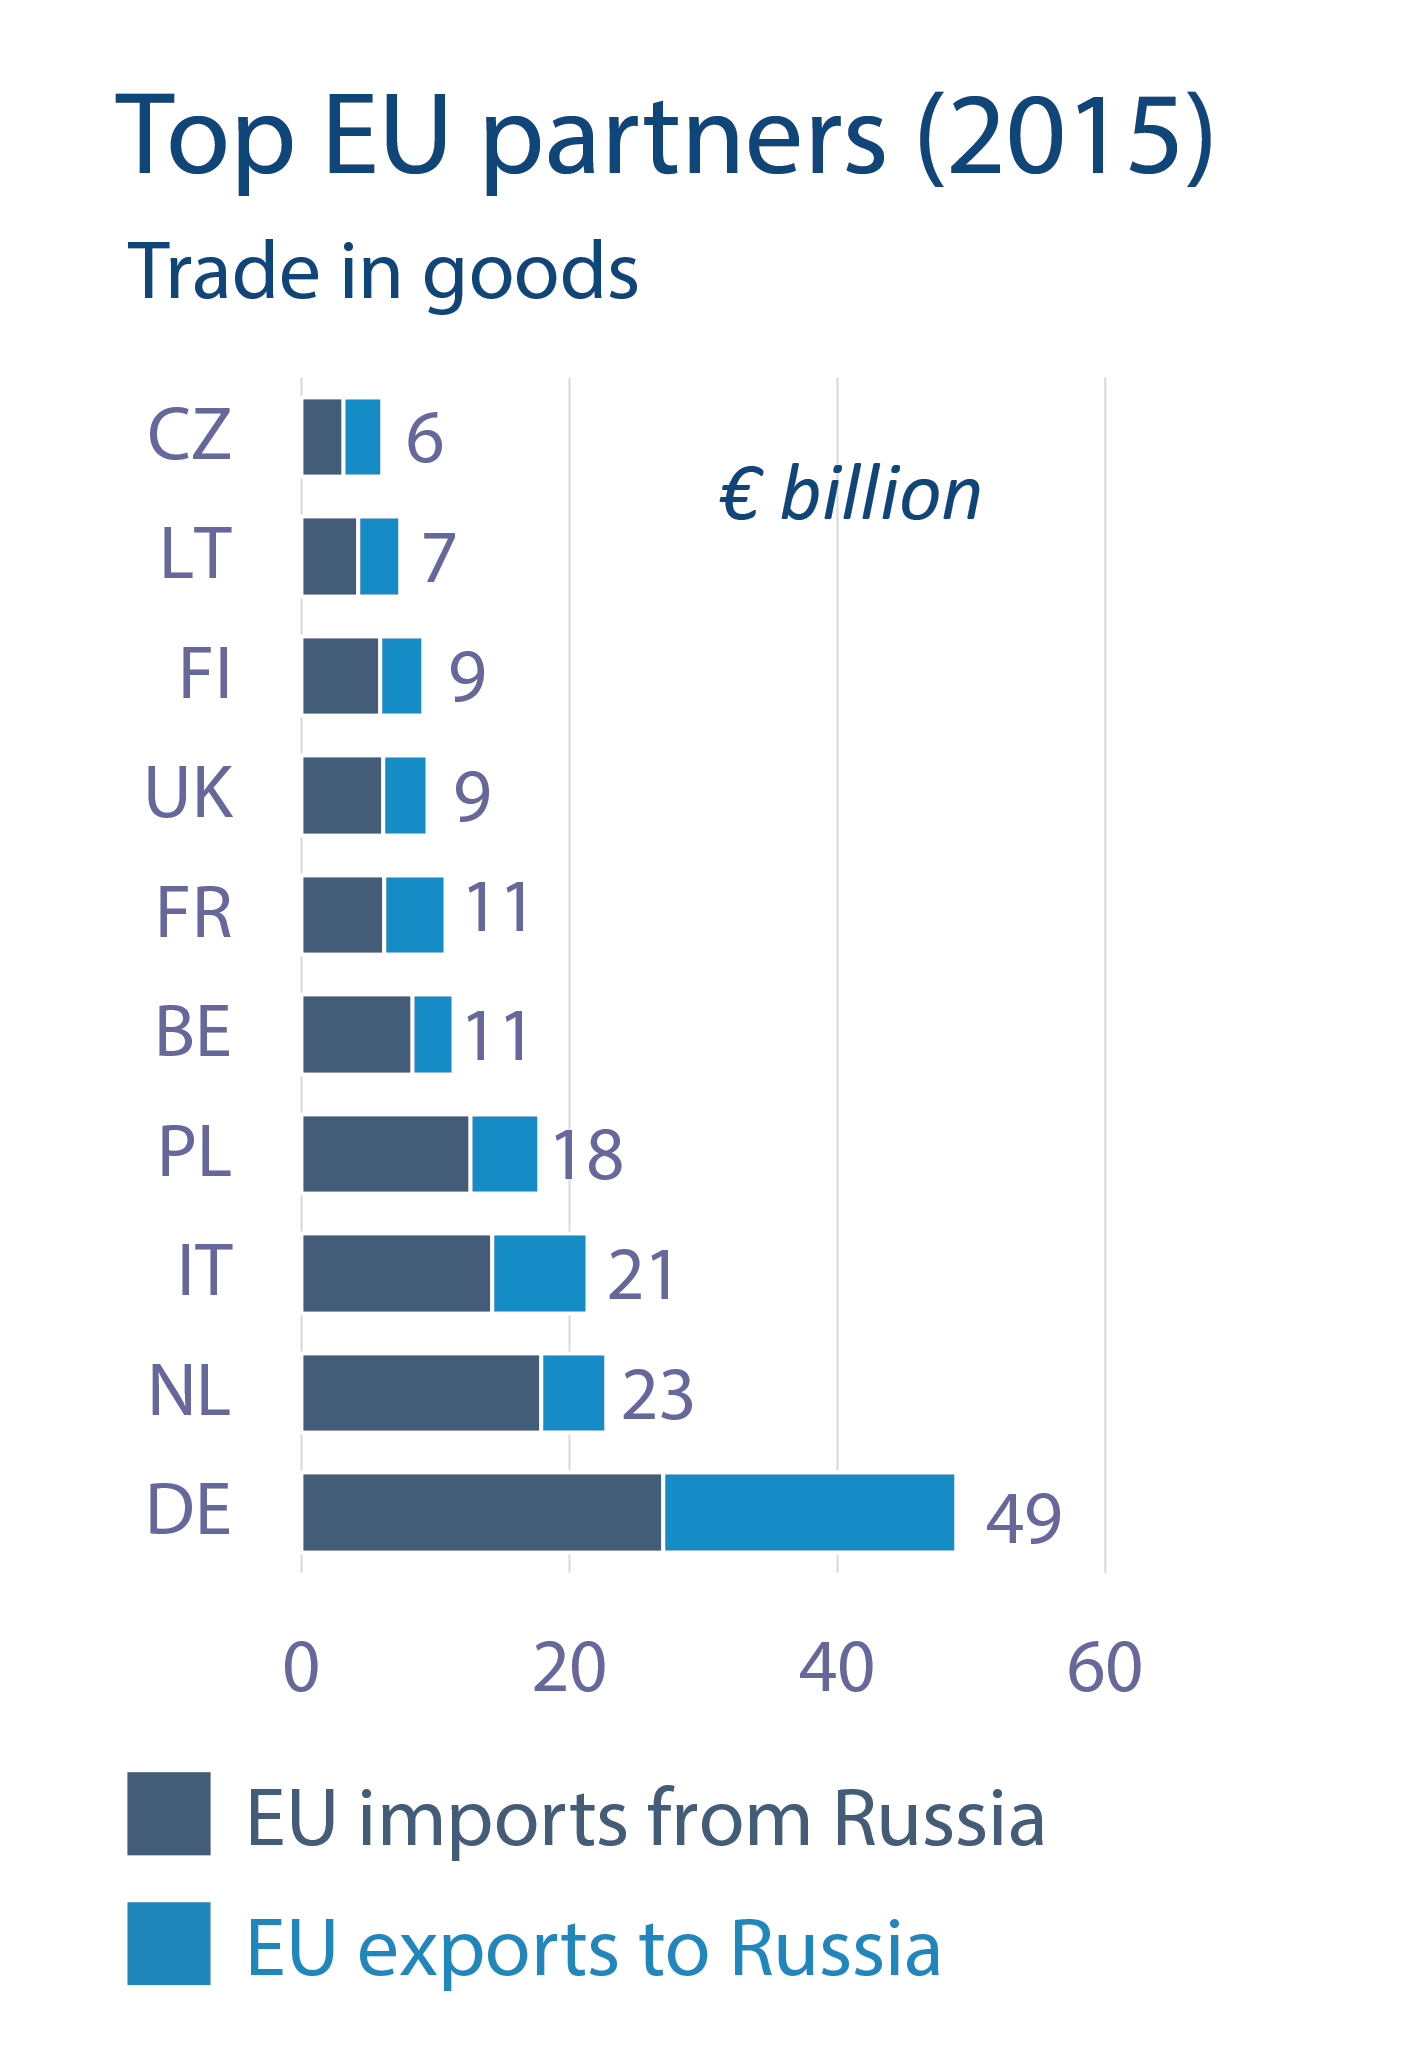 Top EU partners (2015), Trade in goods